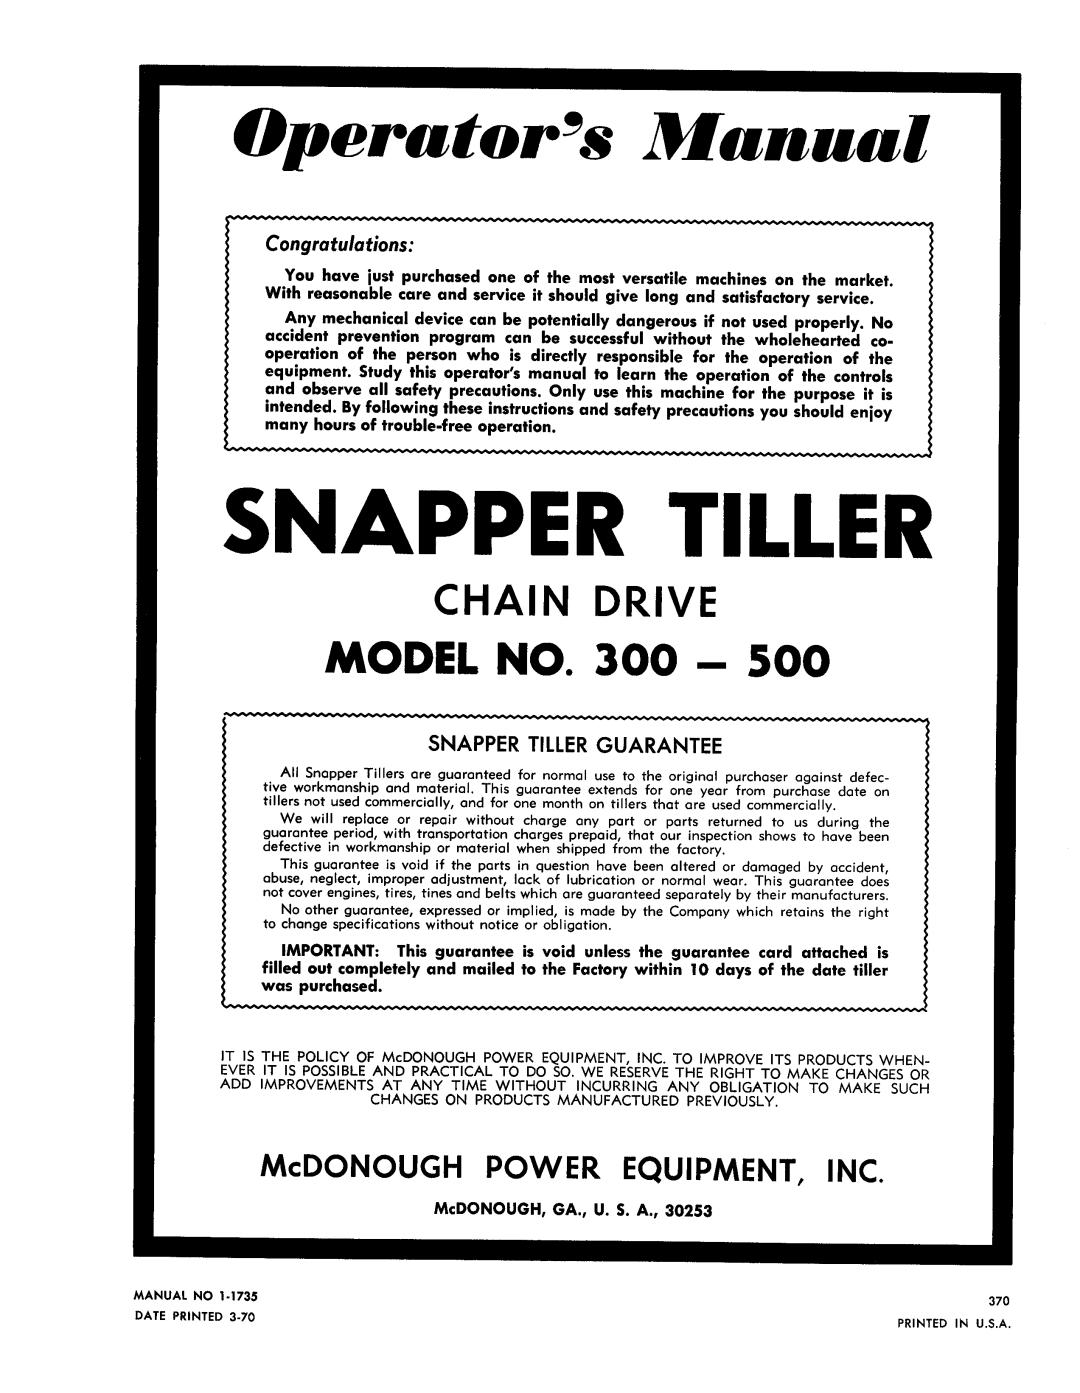 Snapper 300-500 manual 